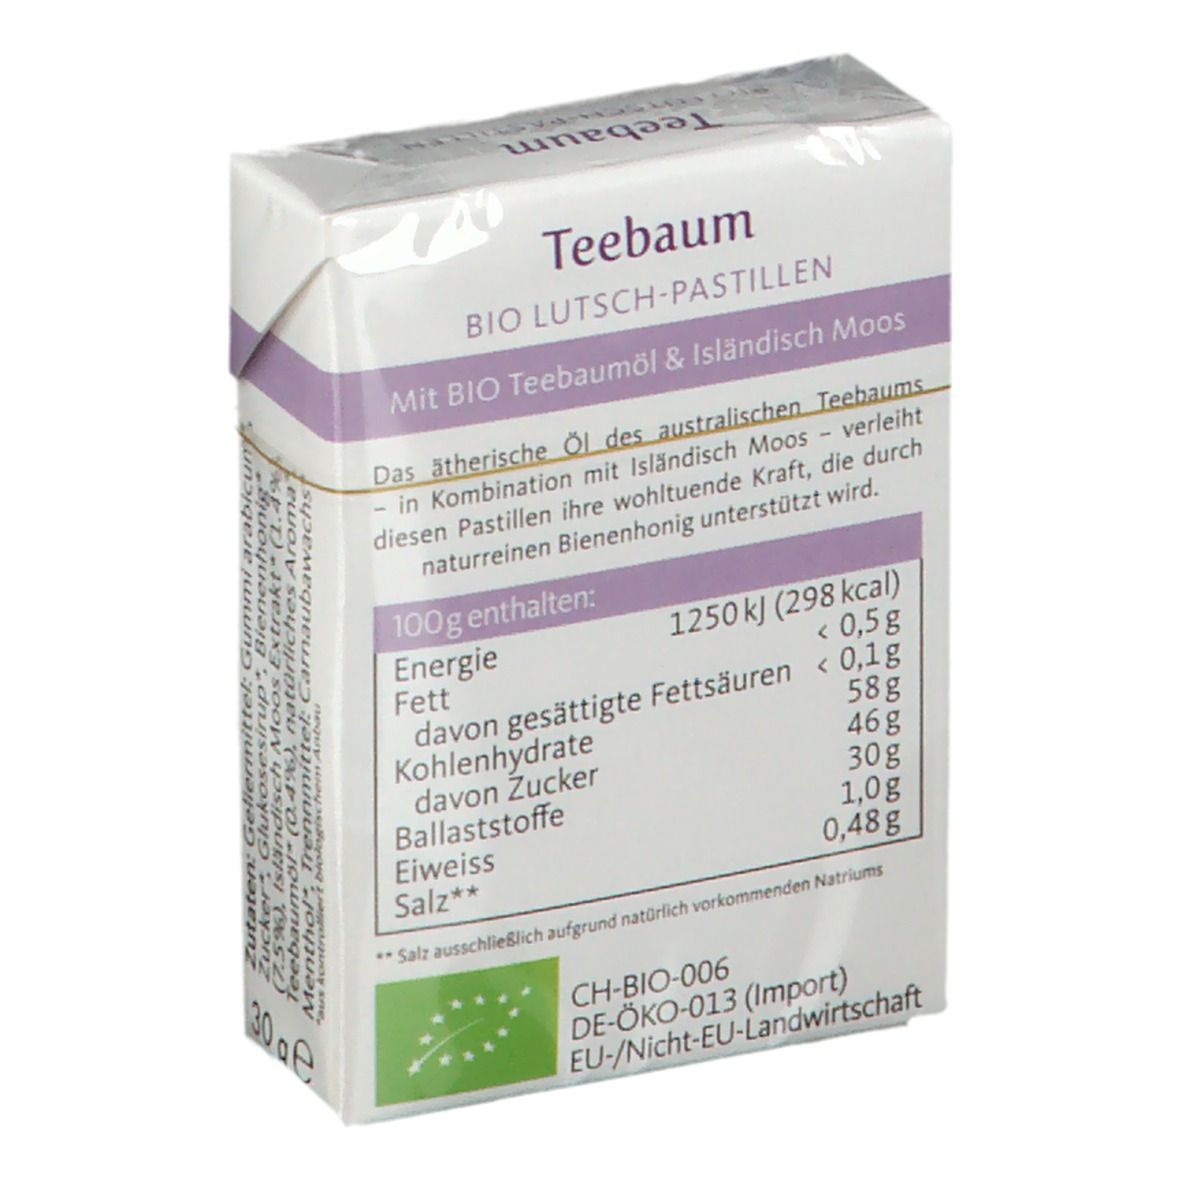 Teebaum-Pastillen BIO